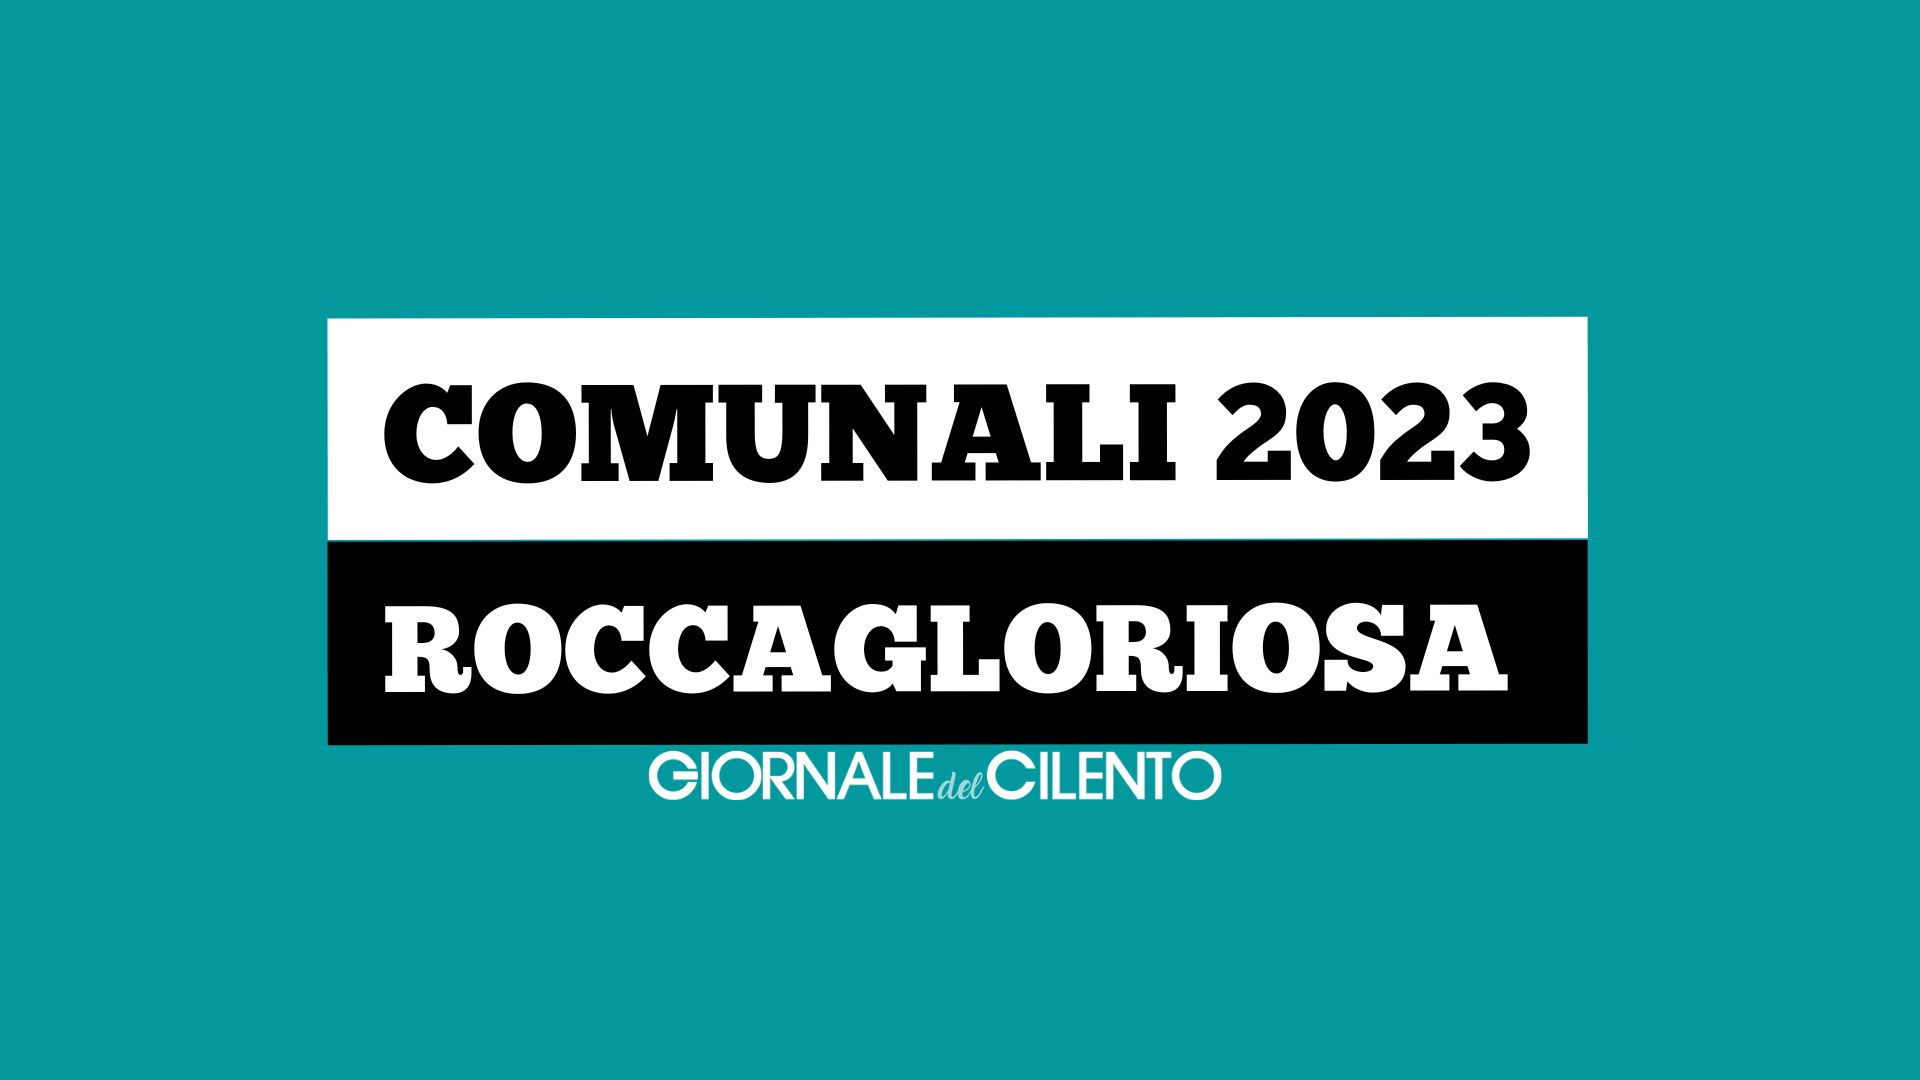 Elezioni comunali 2023, le liste e i candidati a Roccagloriosa